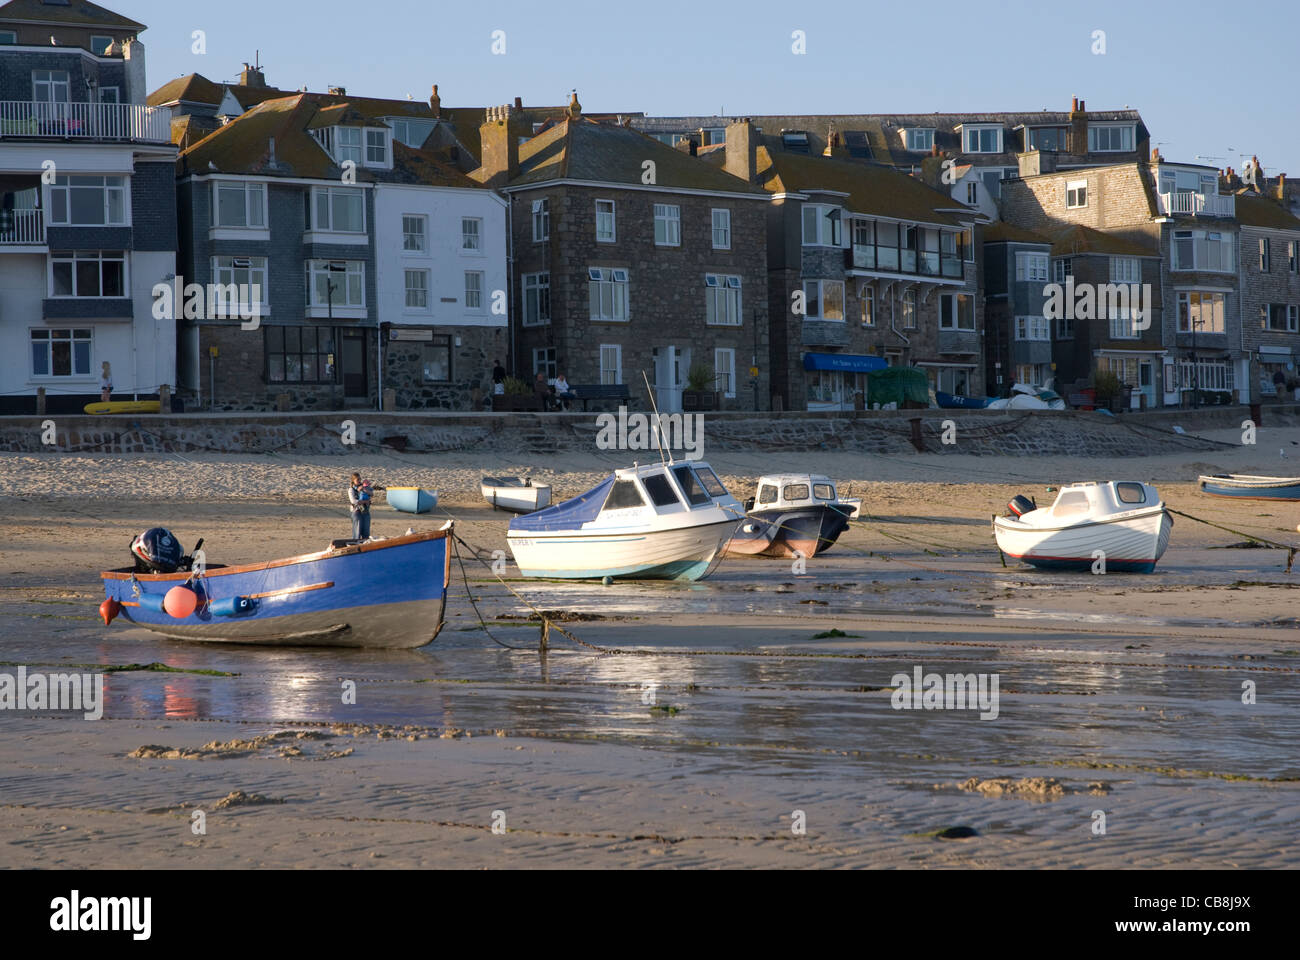 Bateaux amarrés sur la plage à marée basse, St Ives, Cornwall England UK Banque D'Images